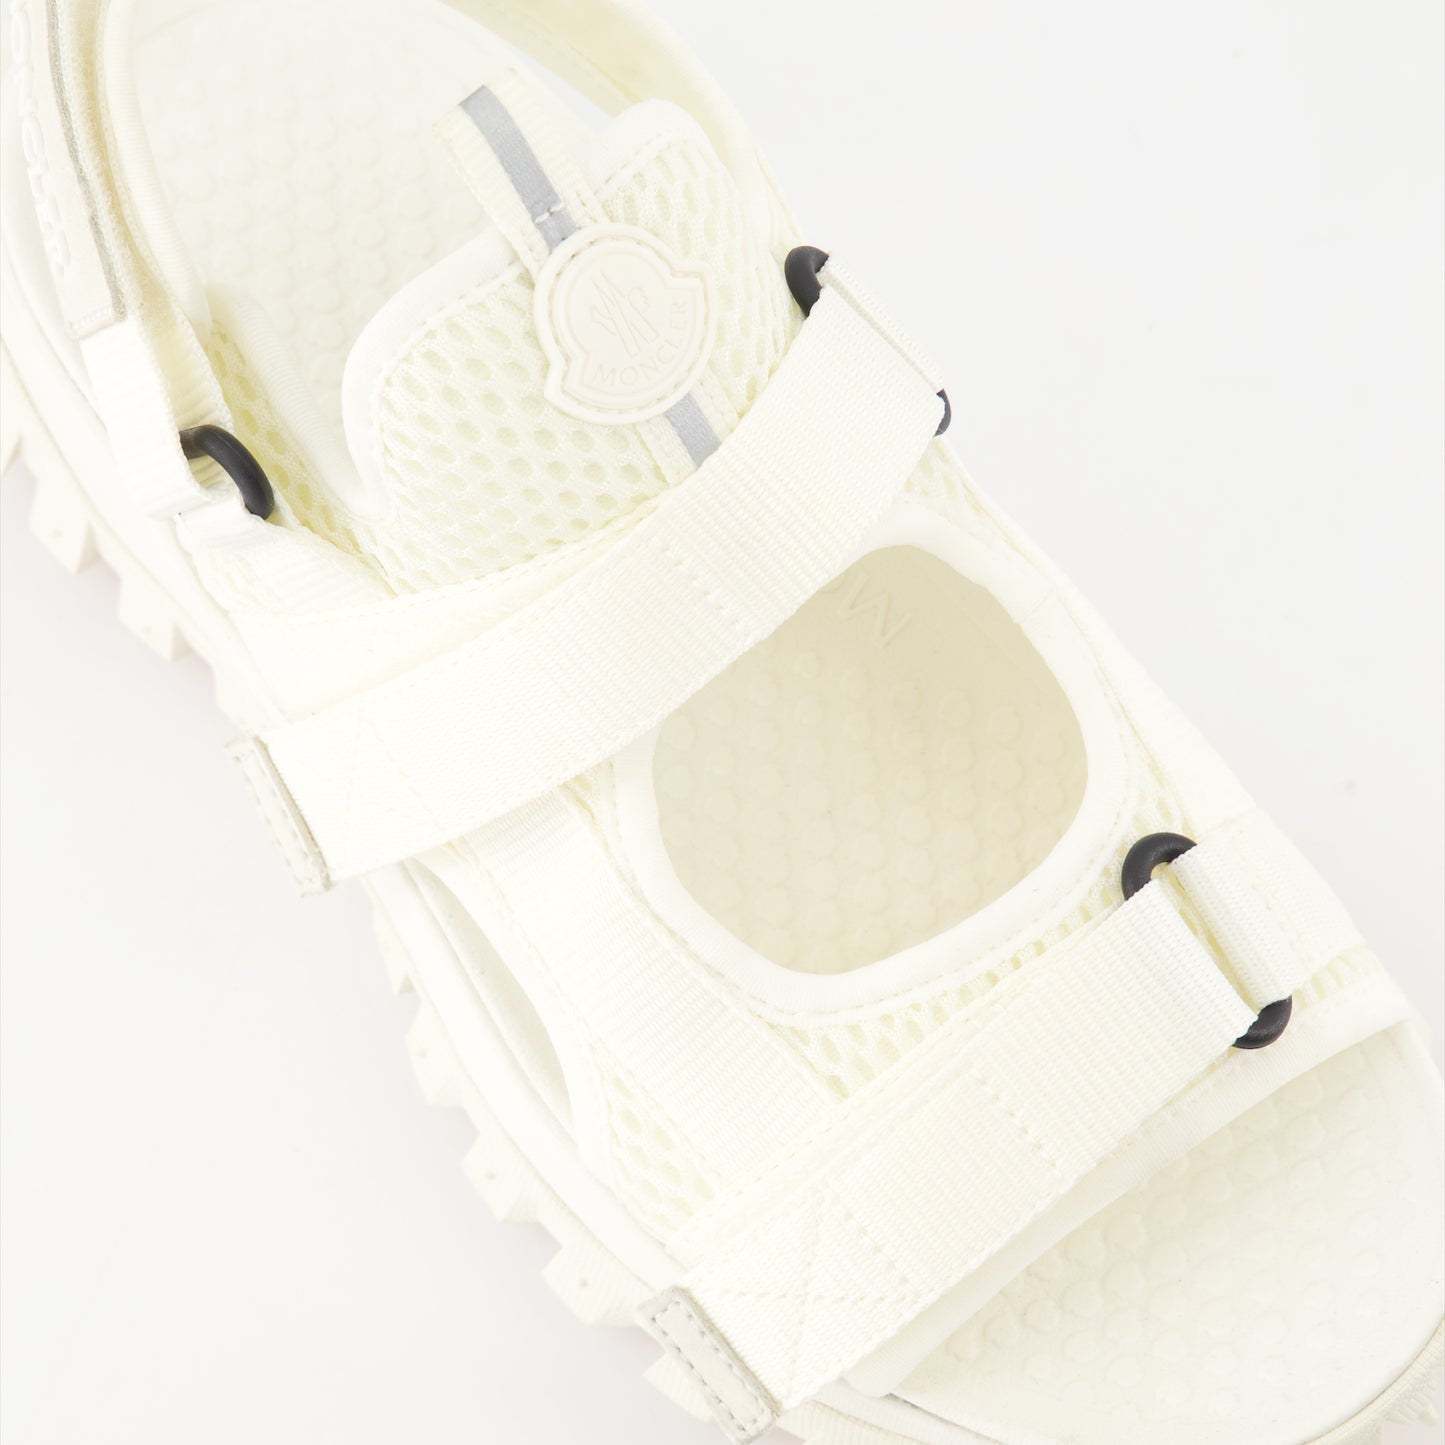 Trailgrip sandals